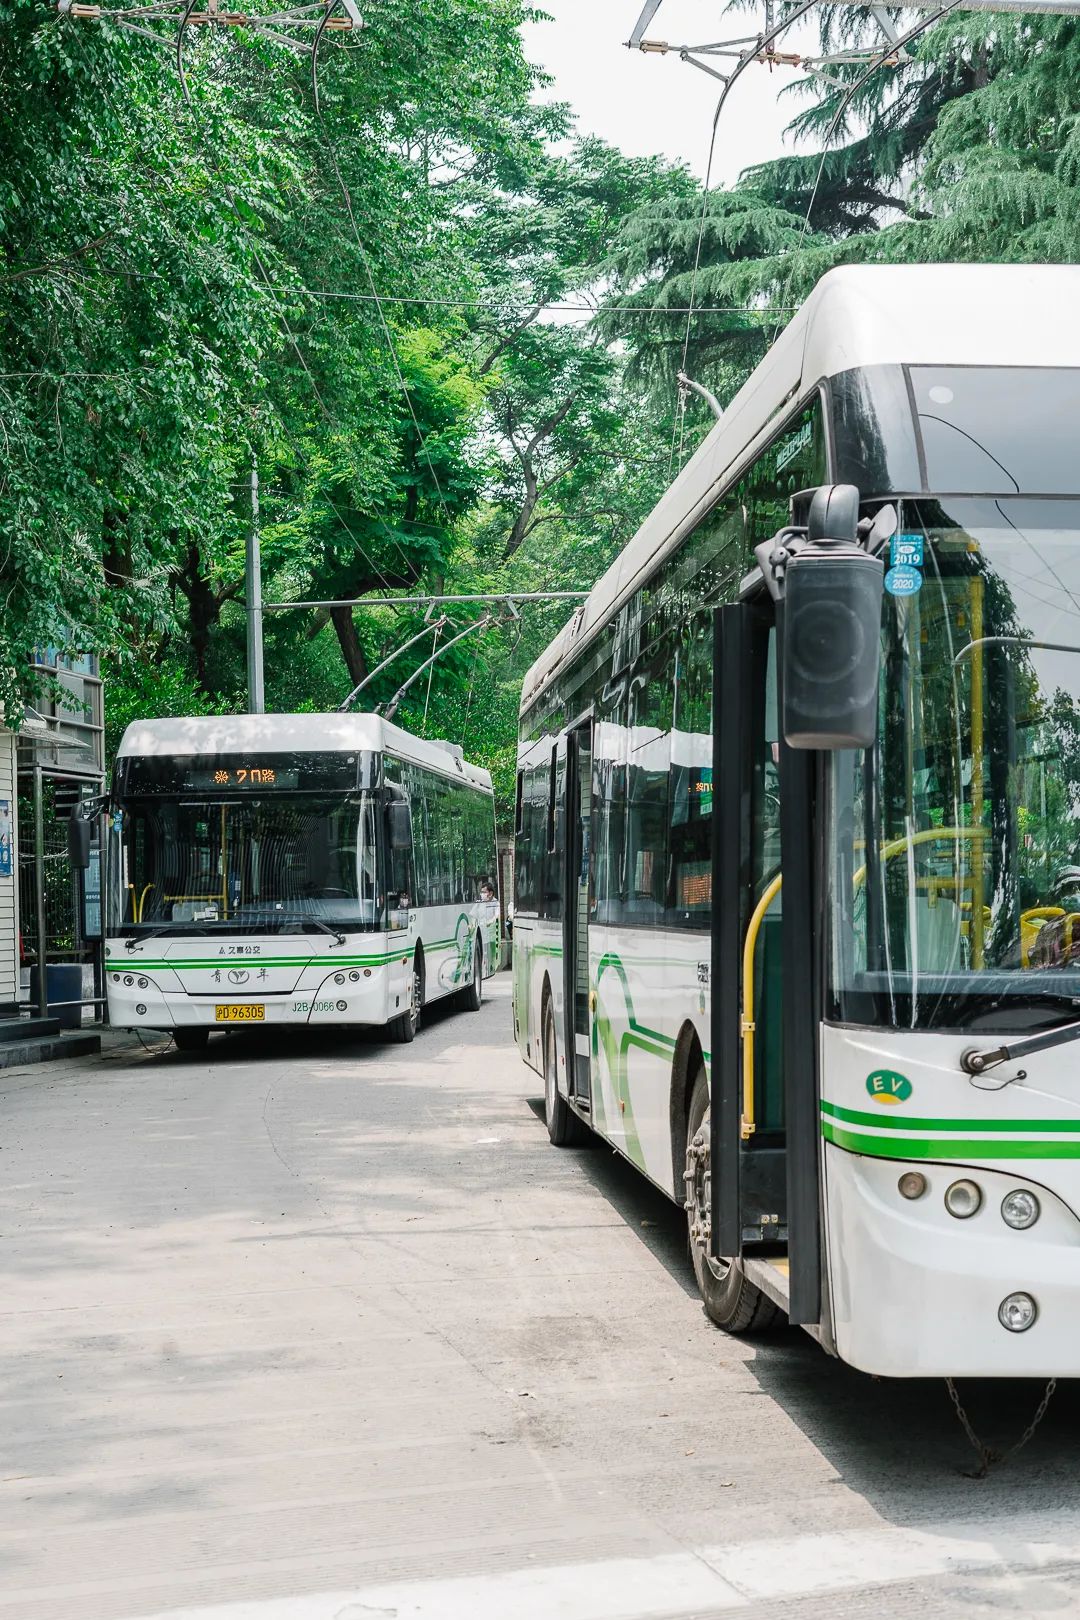 上海公交现役车型图集(截止2020年9月)—万象篇③ - 哔哩哔哩